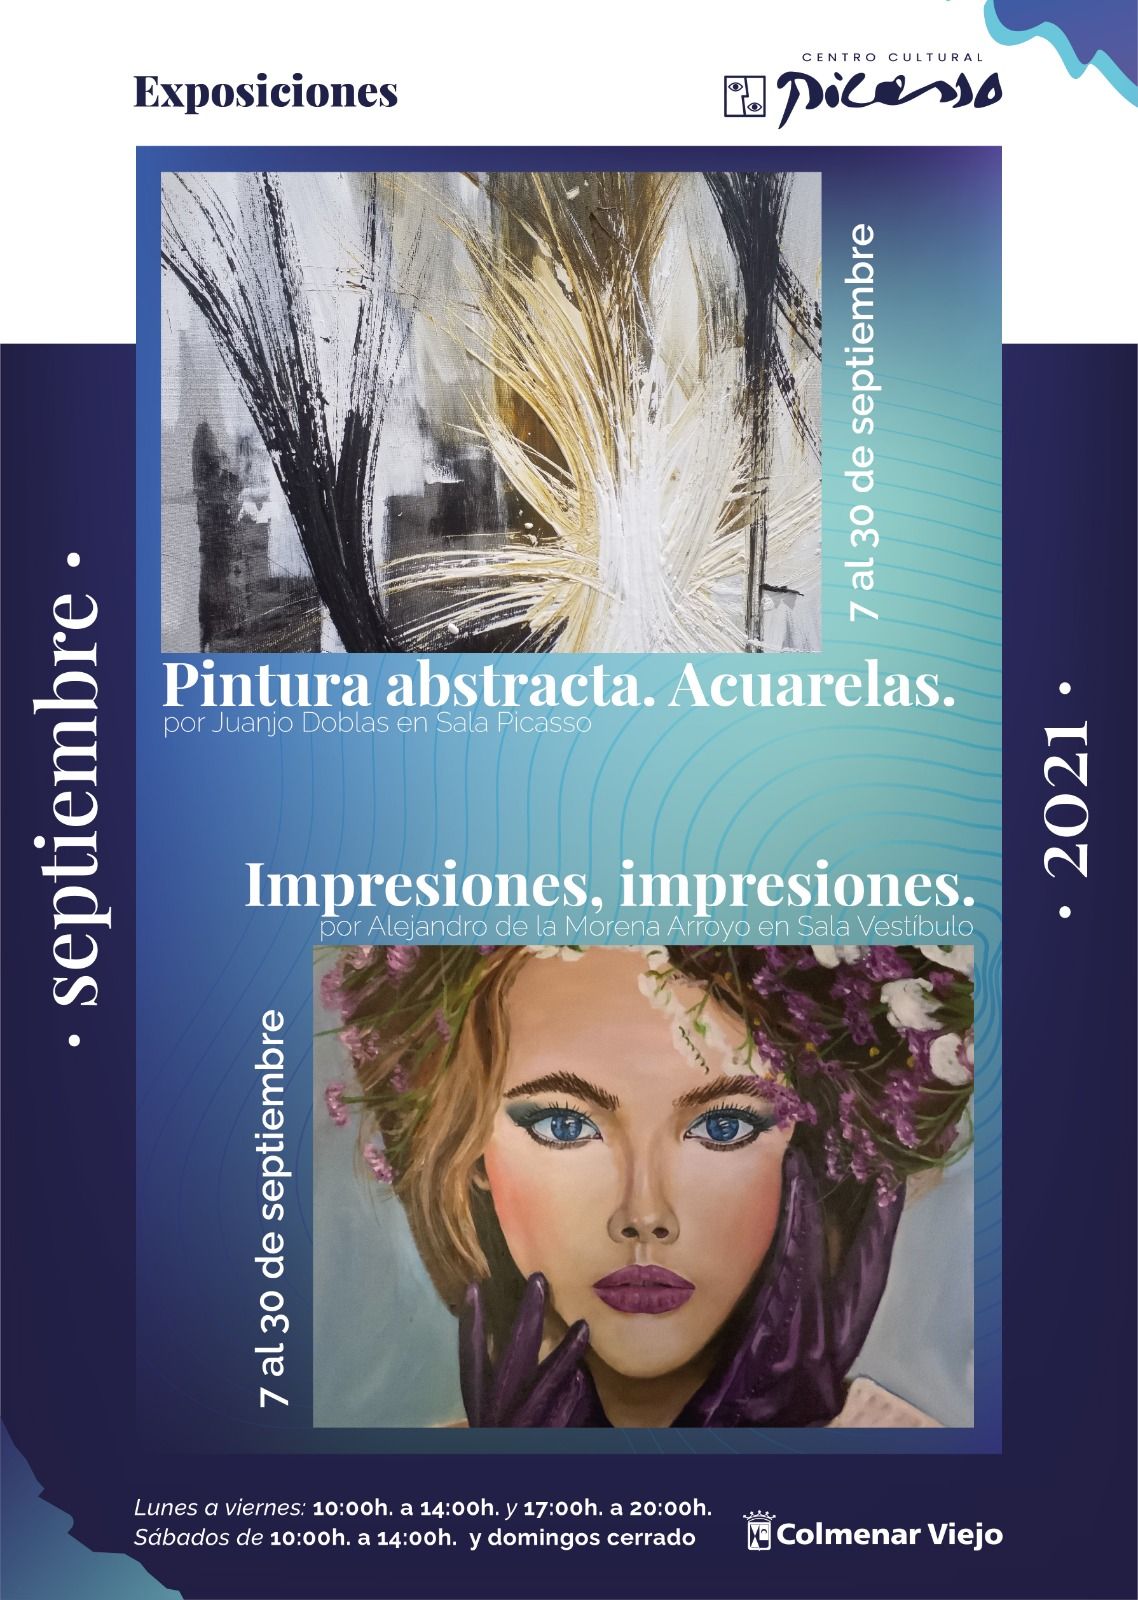 Exposiciones Picasso Septiembre21